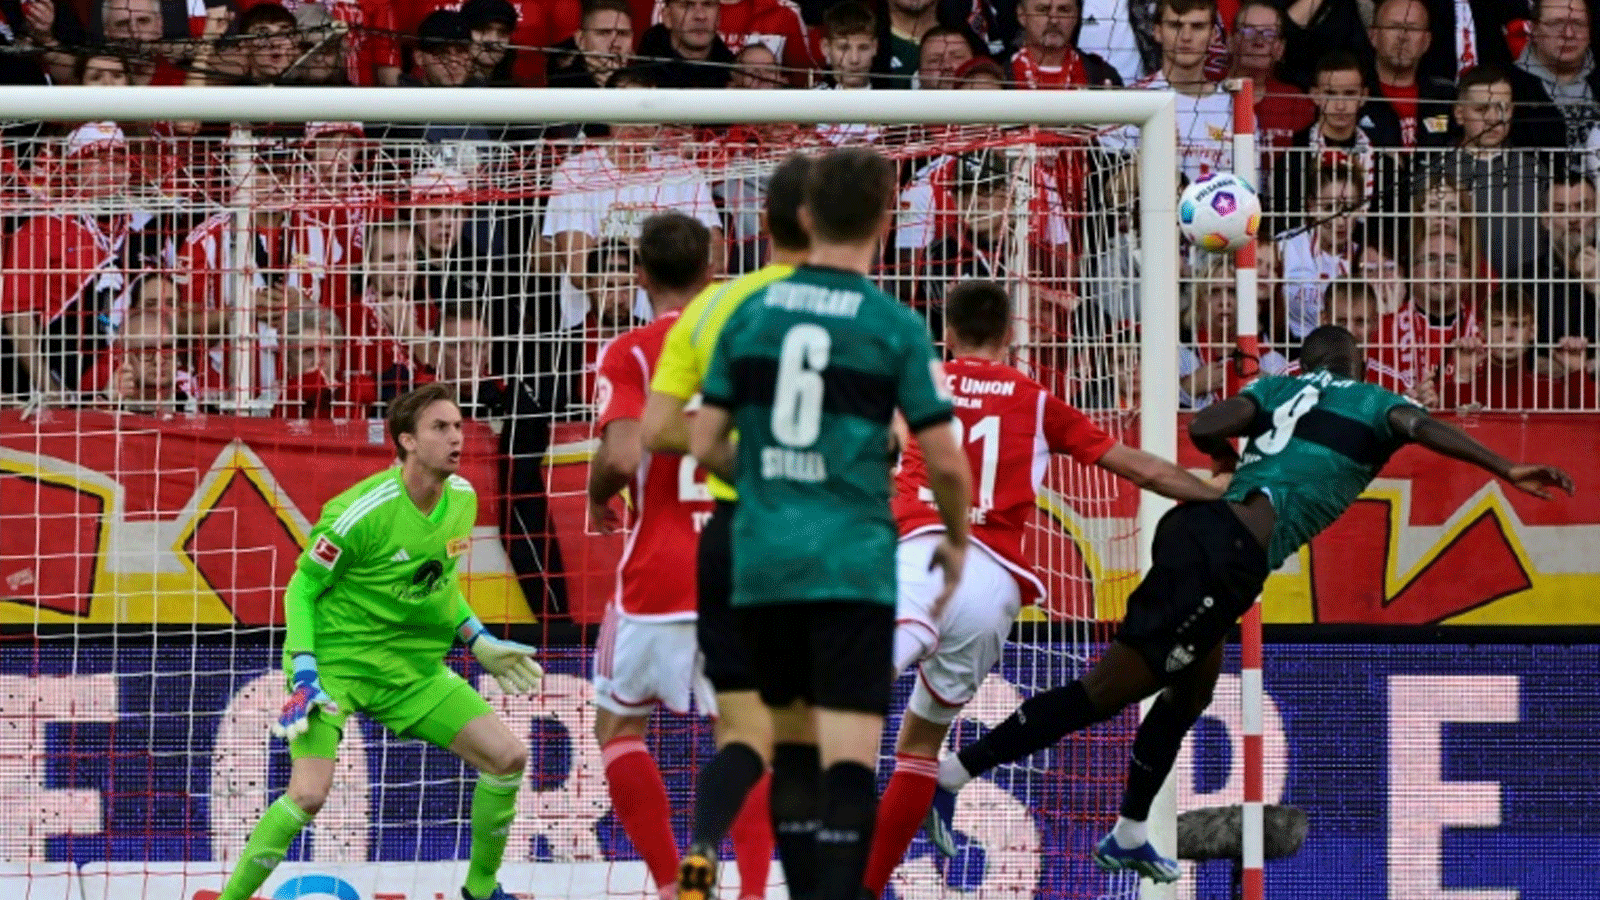 أصبح لاعب شتوتغارت الغيني سيرهو غيراسي ثاني لاعب هذا القرن في الدوريات الخمسة الكبرى في أوروبا يسجل 14 هدفًا في أول ثماني مباريات، بعد البرتغالي كريستيانو رونالدو مع ريال مدريد الاسباني في موسم 2014-2015